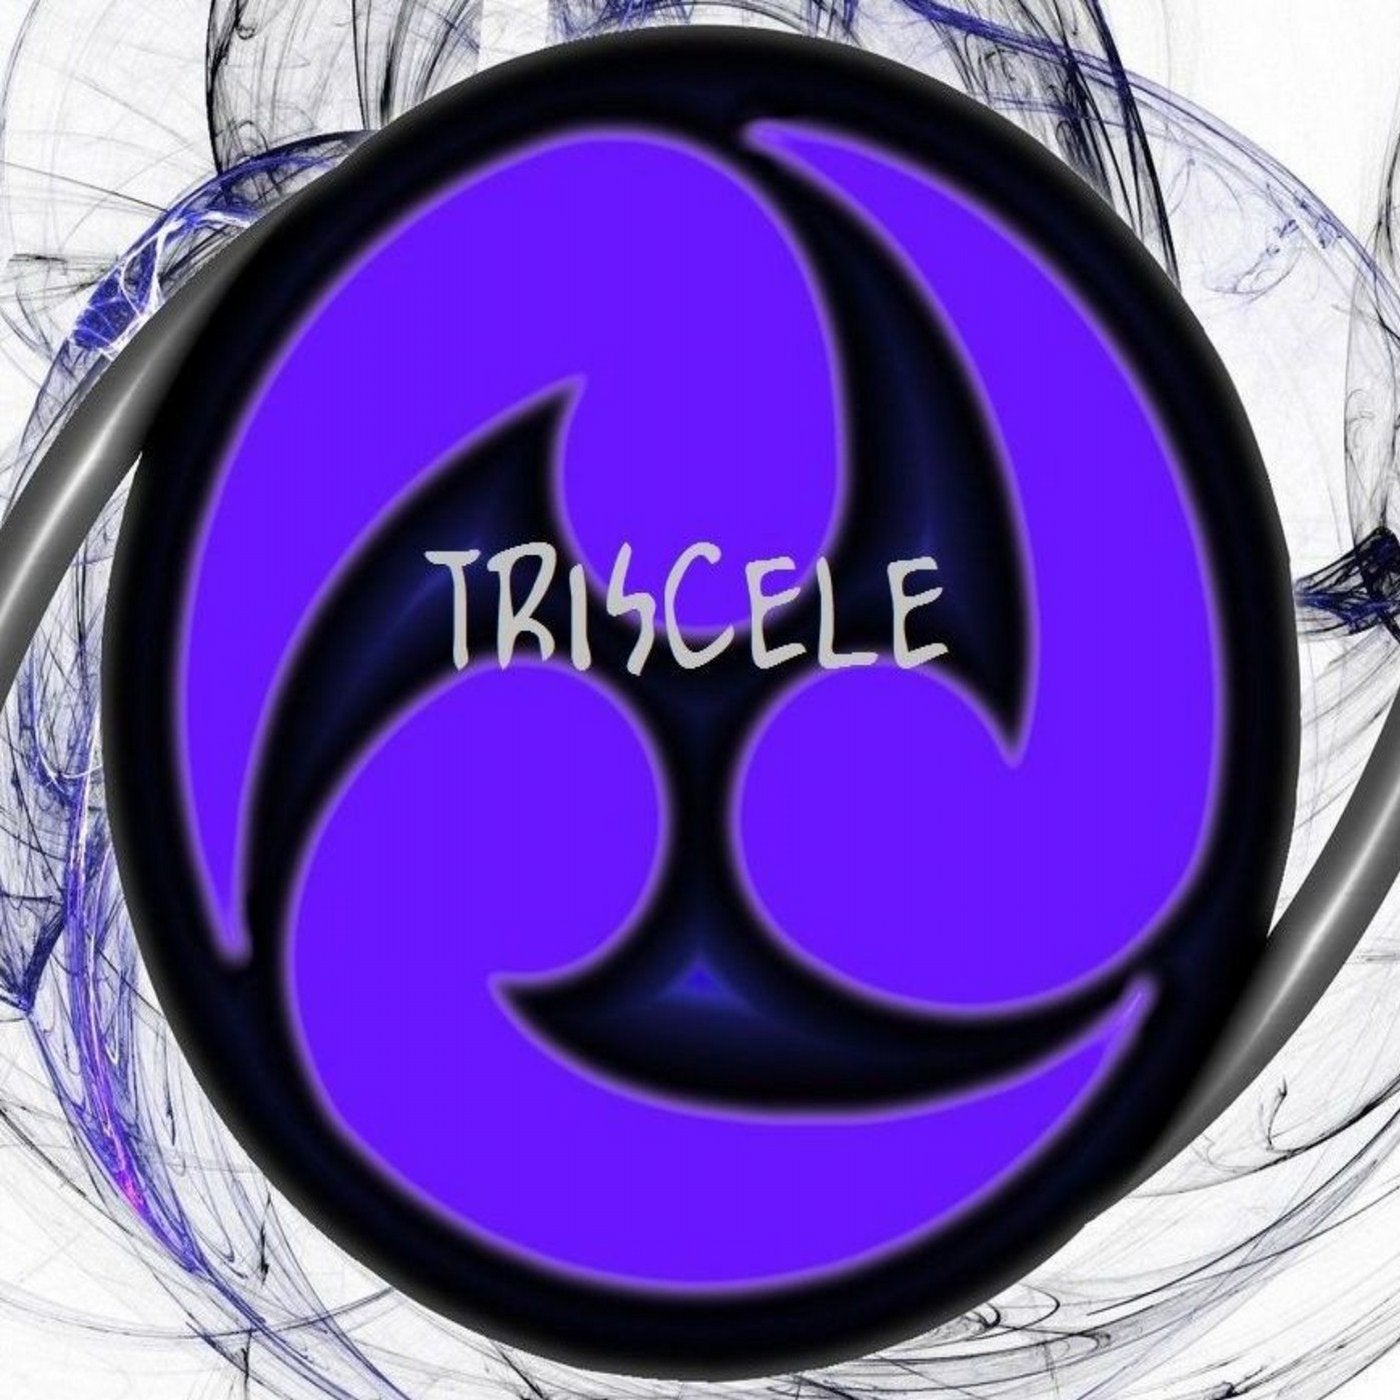 Triscele